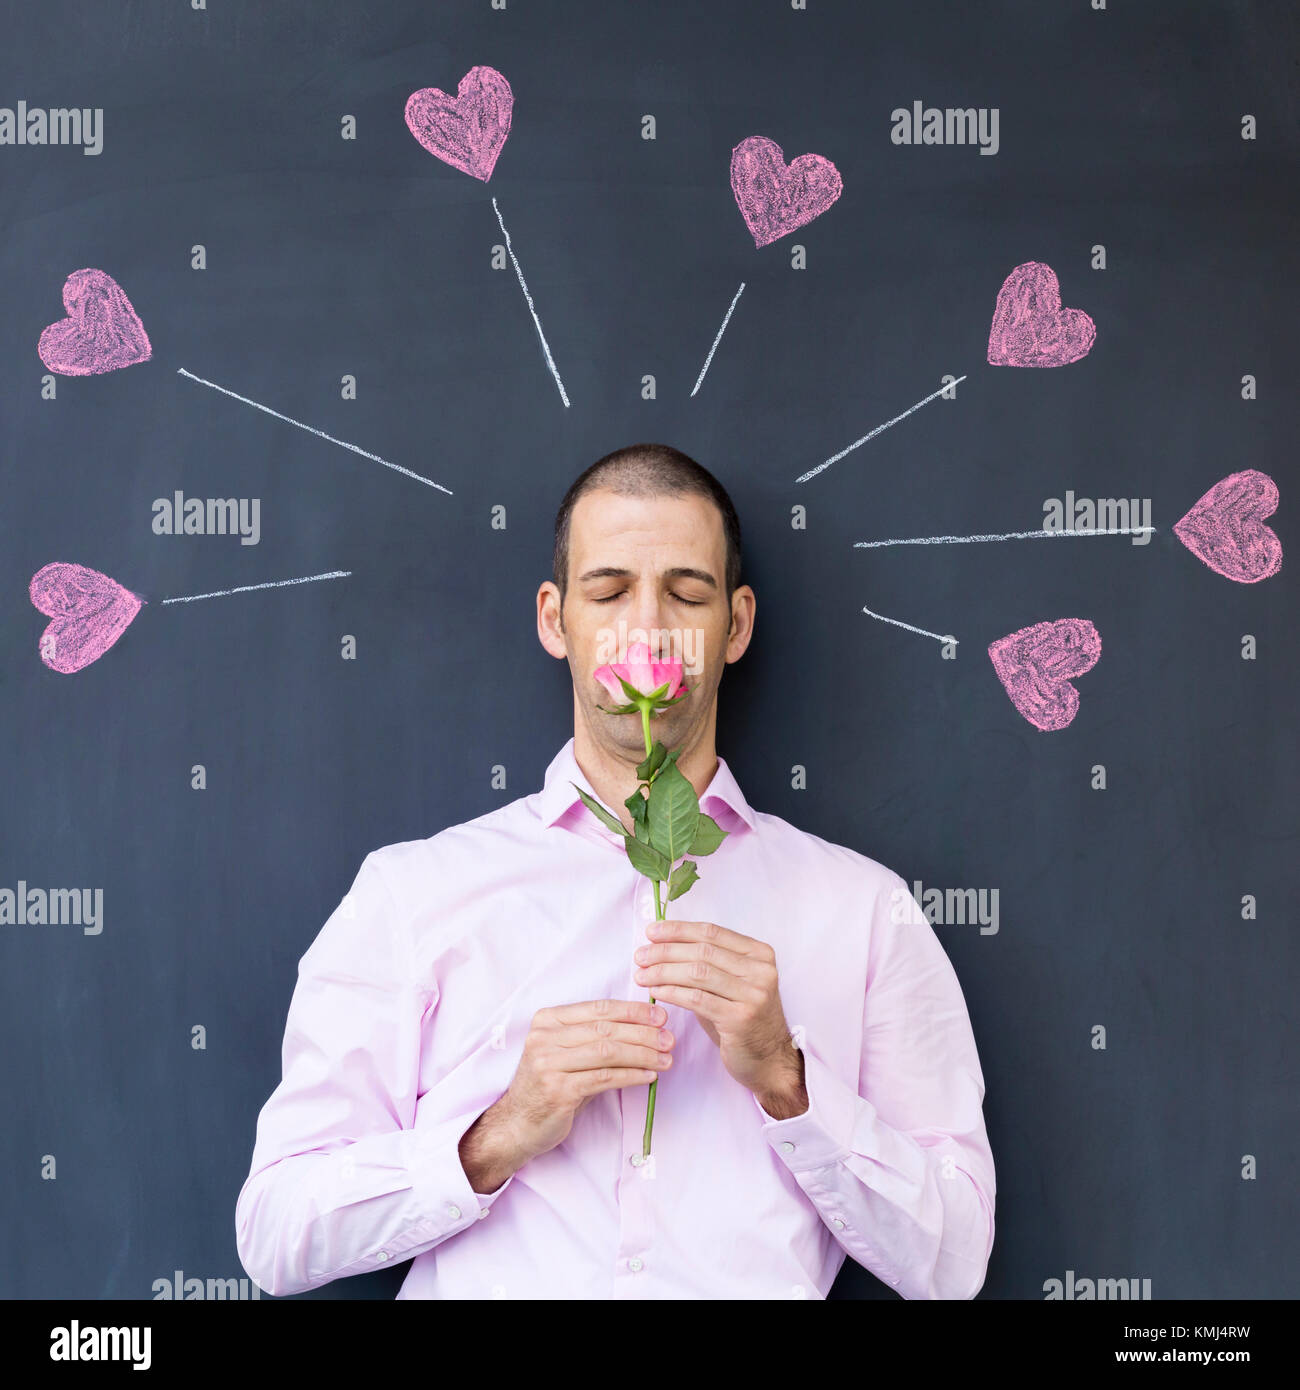 Einzelne Erwachsene weiße Mann trägt ein rosafarbenes Hemd stand vor einer Tafel mit gemalten Herzen Holding eine Rose. Konzept der verrückte Liebe. Stockfoto